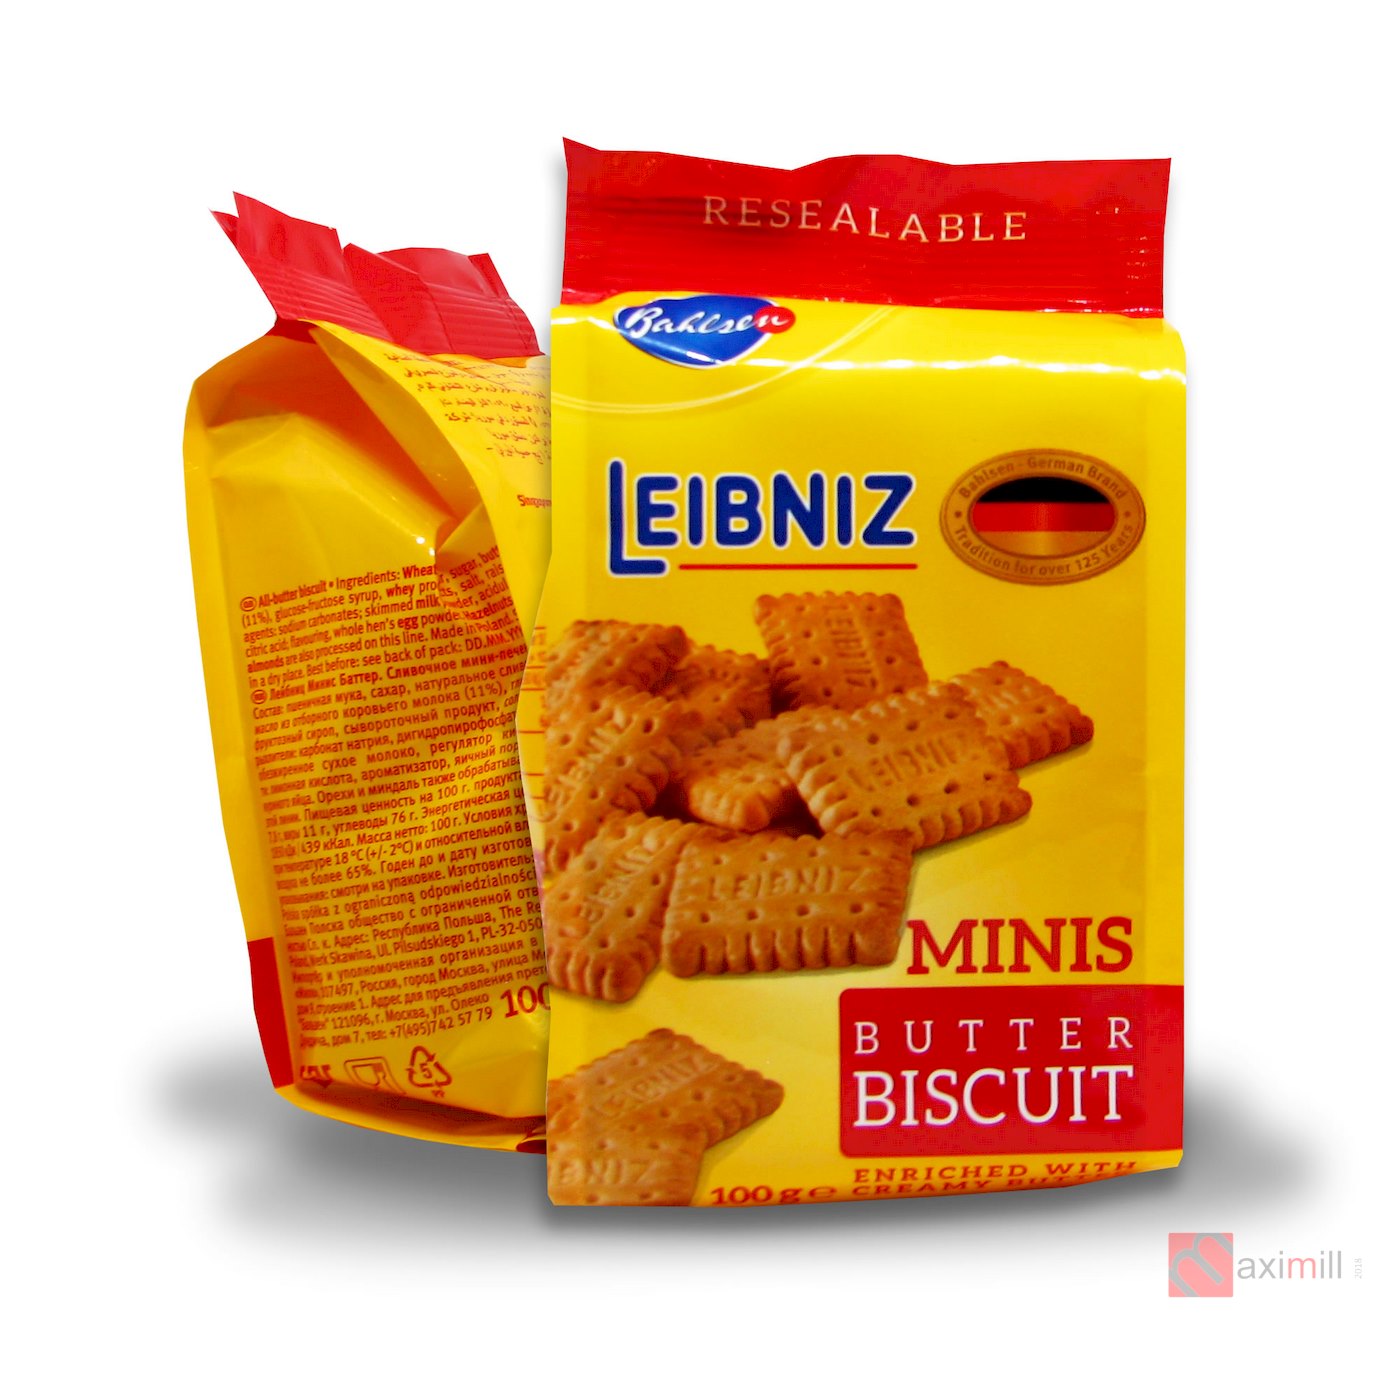 Печенье Minis Butter Biscuit Leibniz